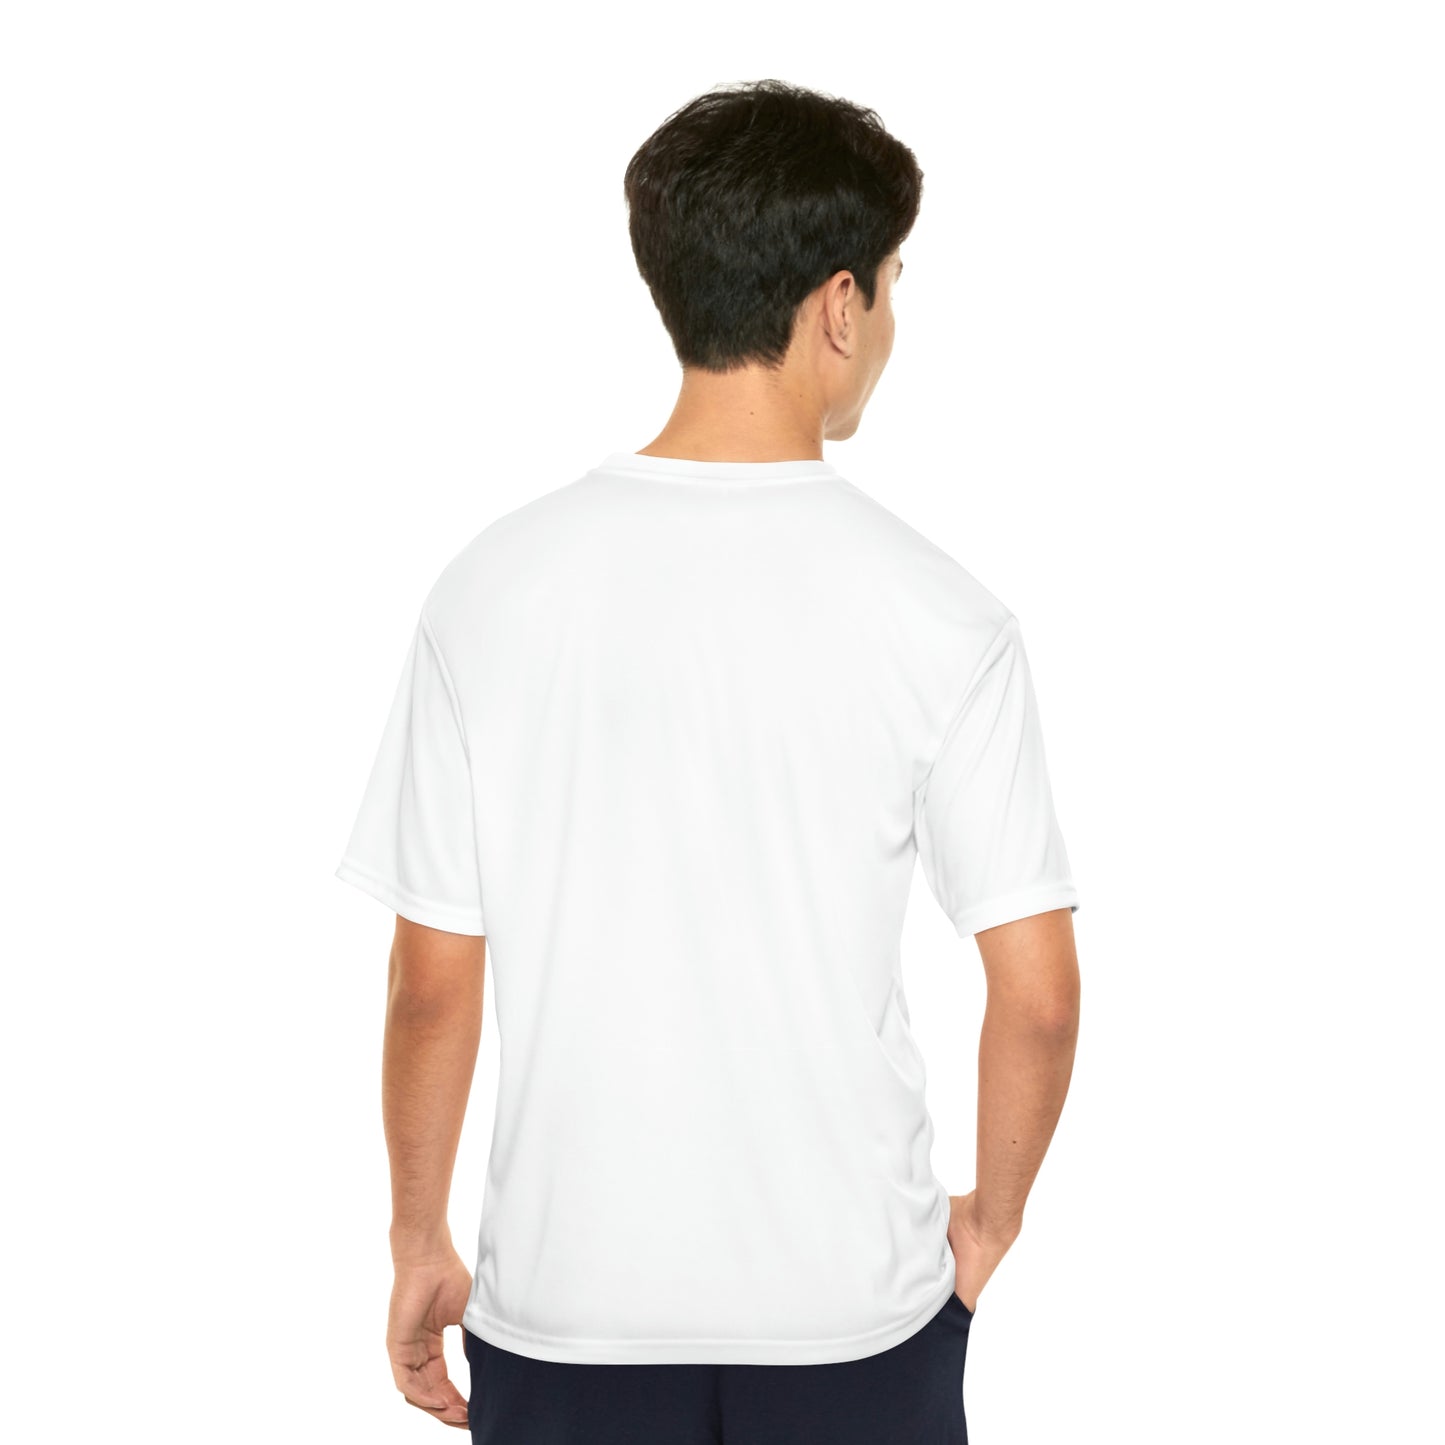 Men's Performance T-Shirt - Official primitive store